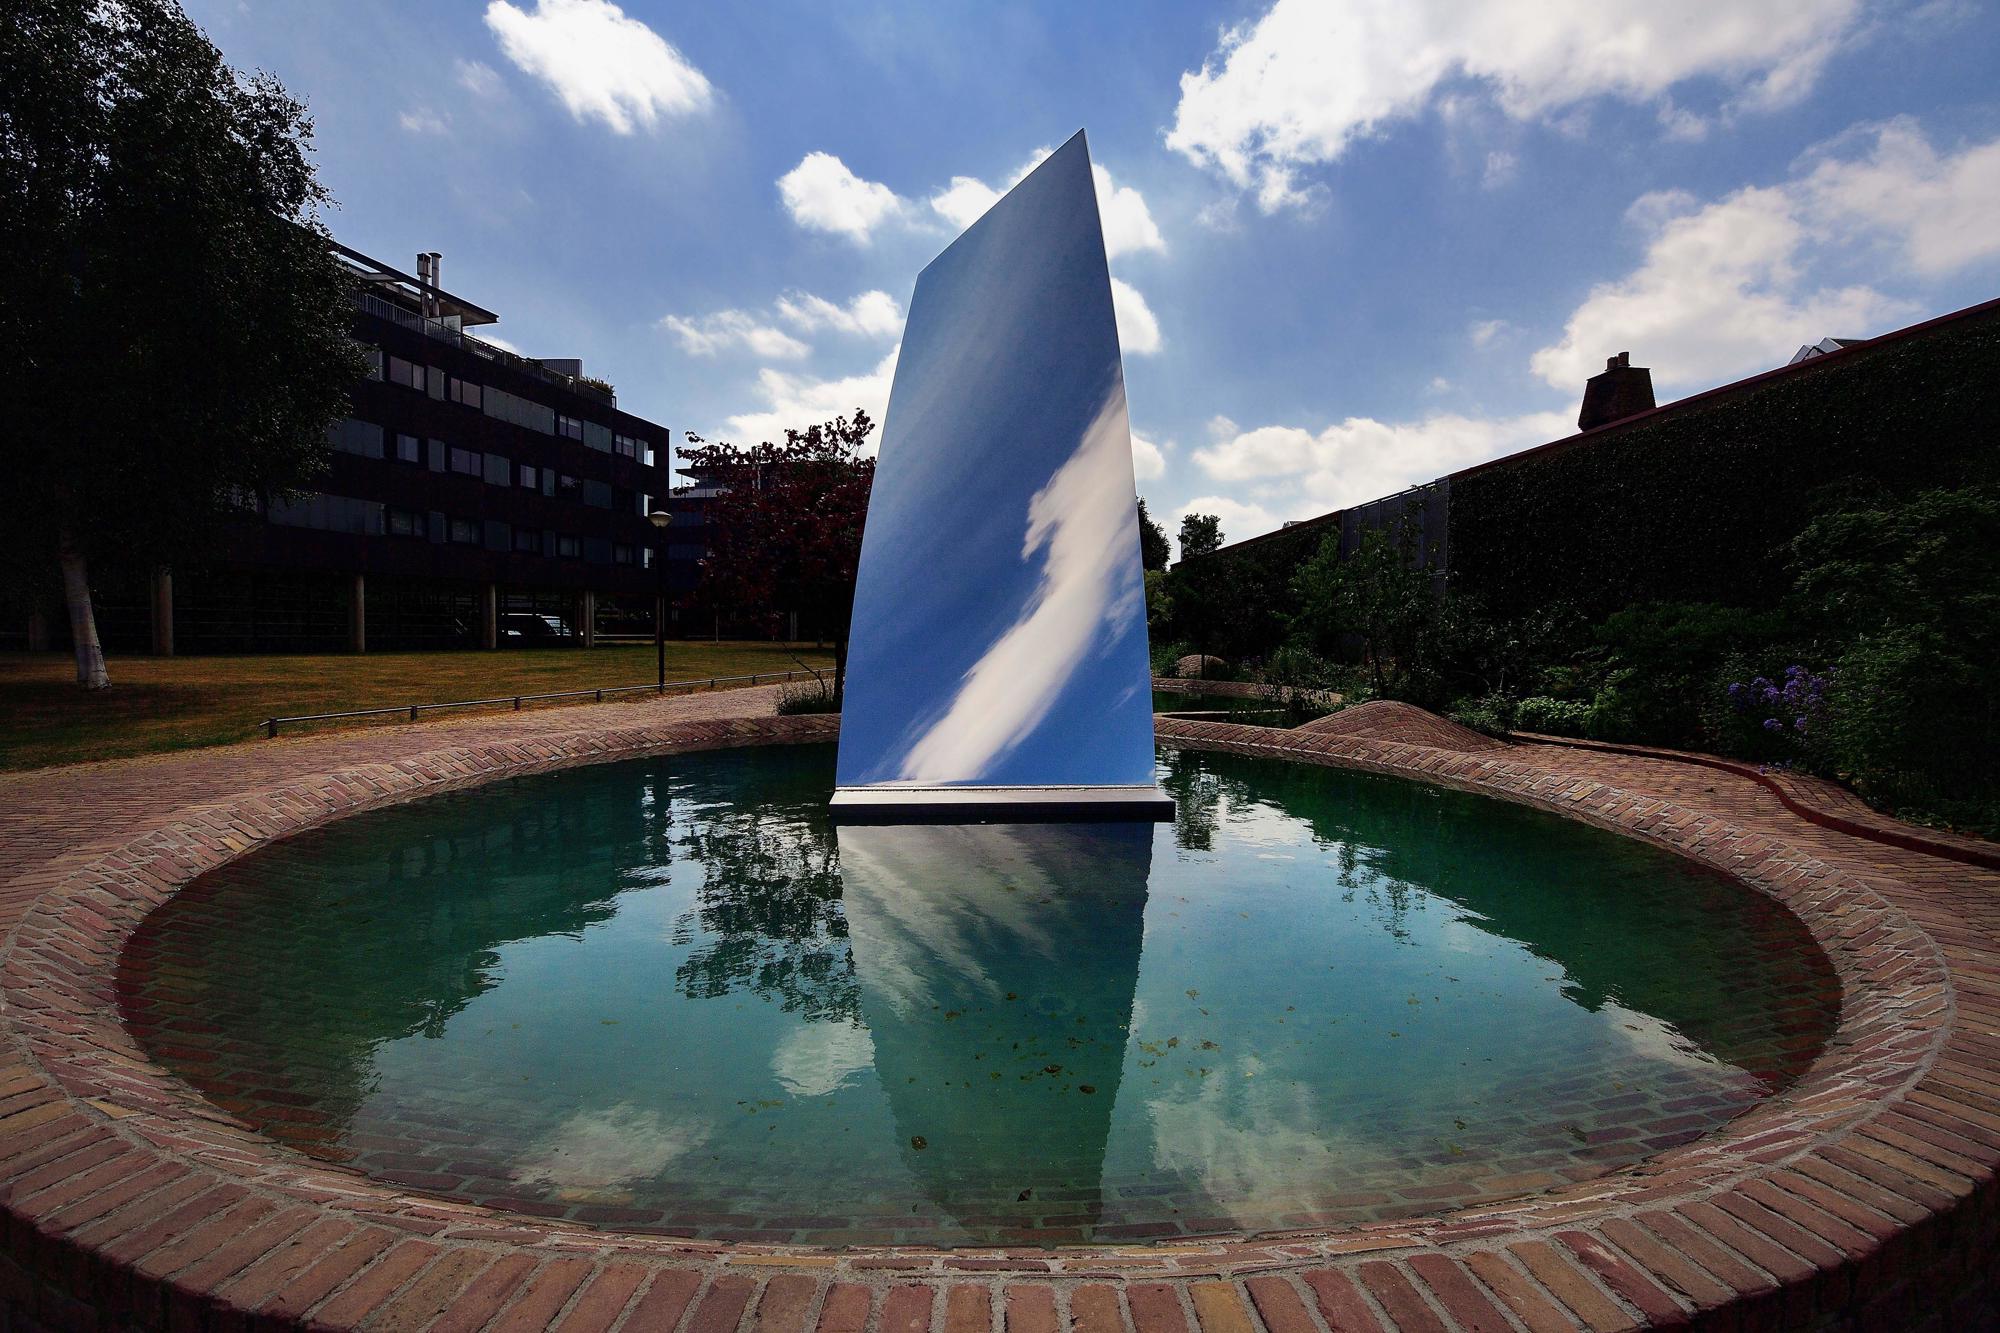 Tilburg is de eerste stad met een sculptuur (Sky Mirror for Hendrik) van Anish Kapoor in de openbare ruimte